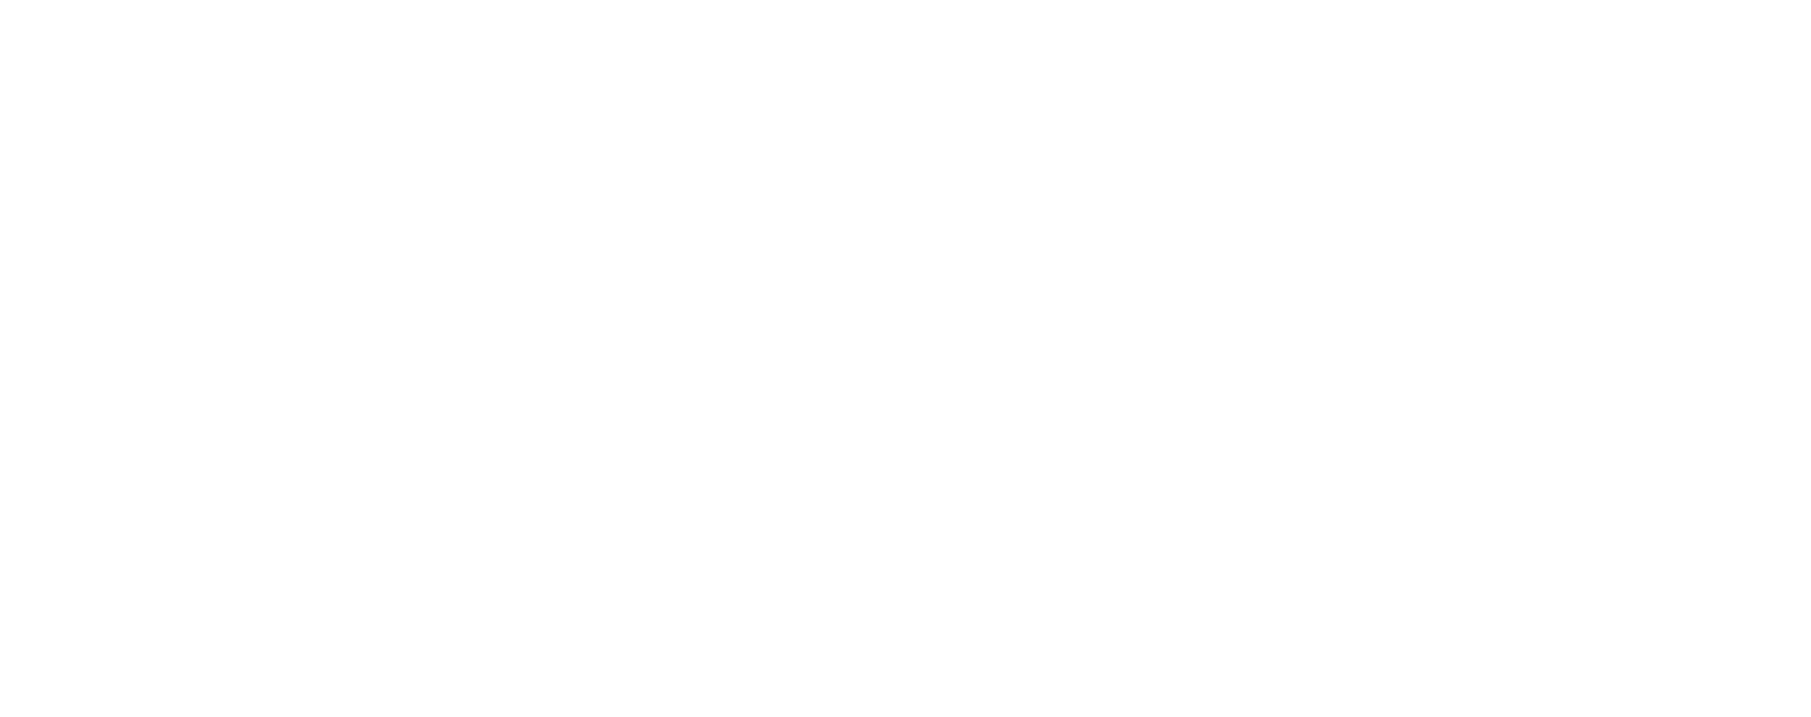 David Ball Counseling Logo